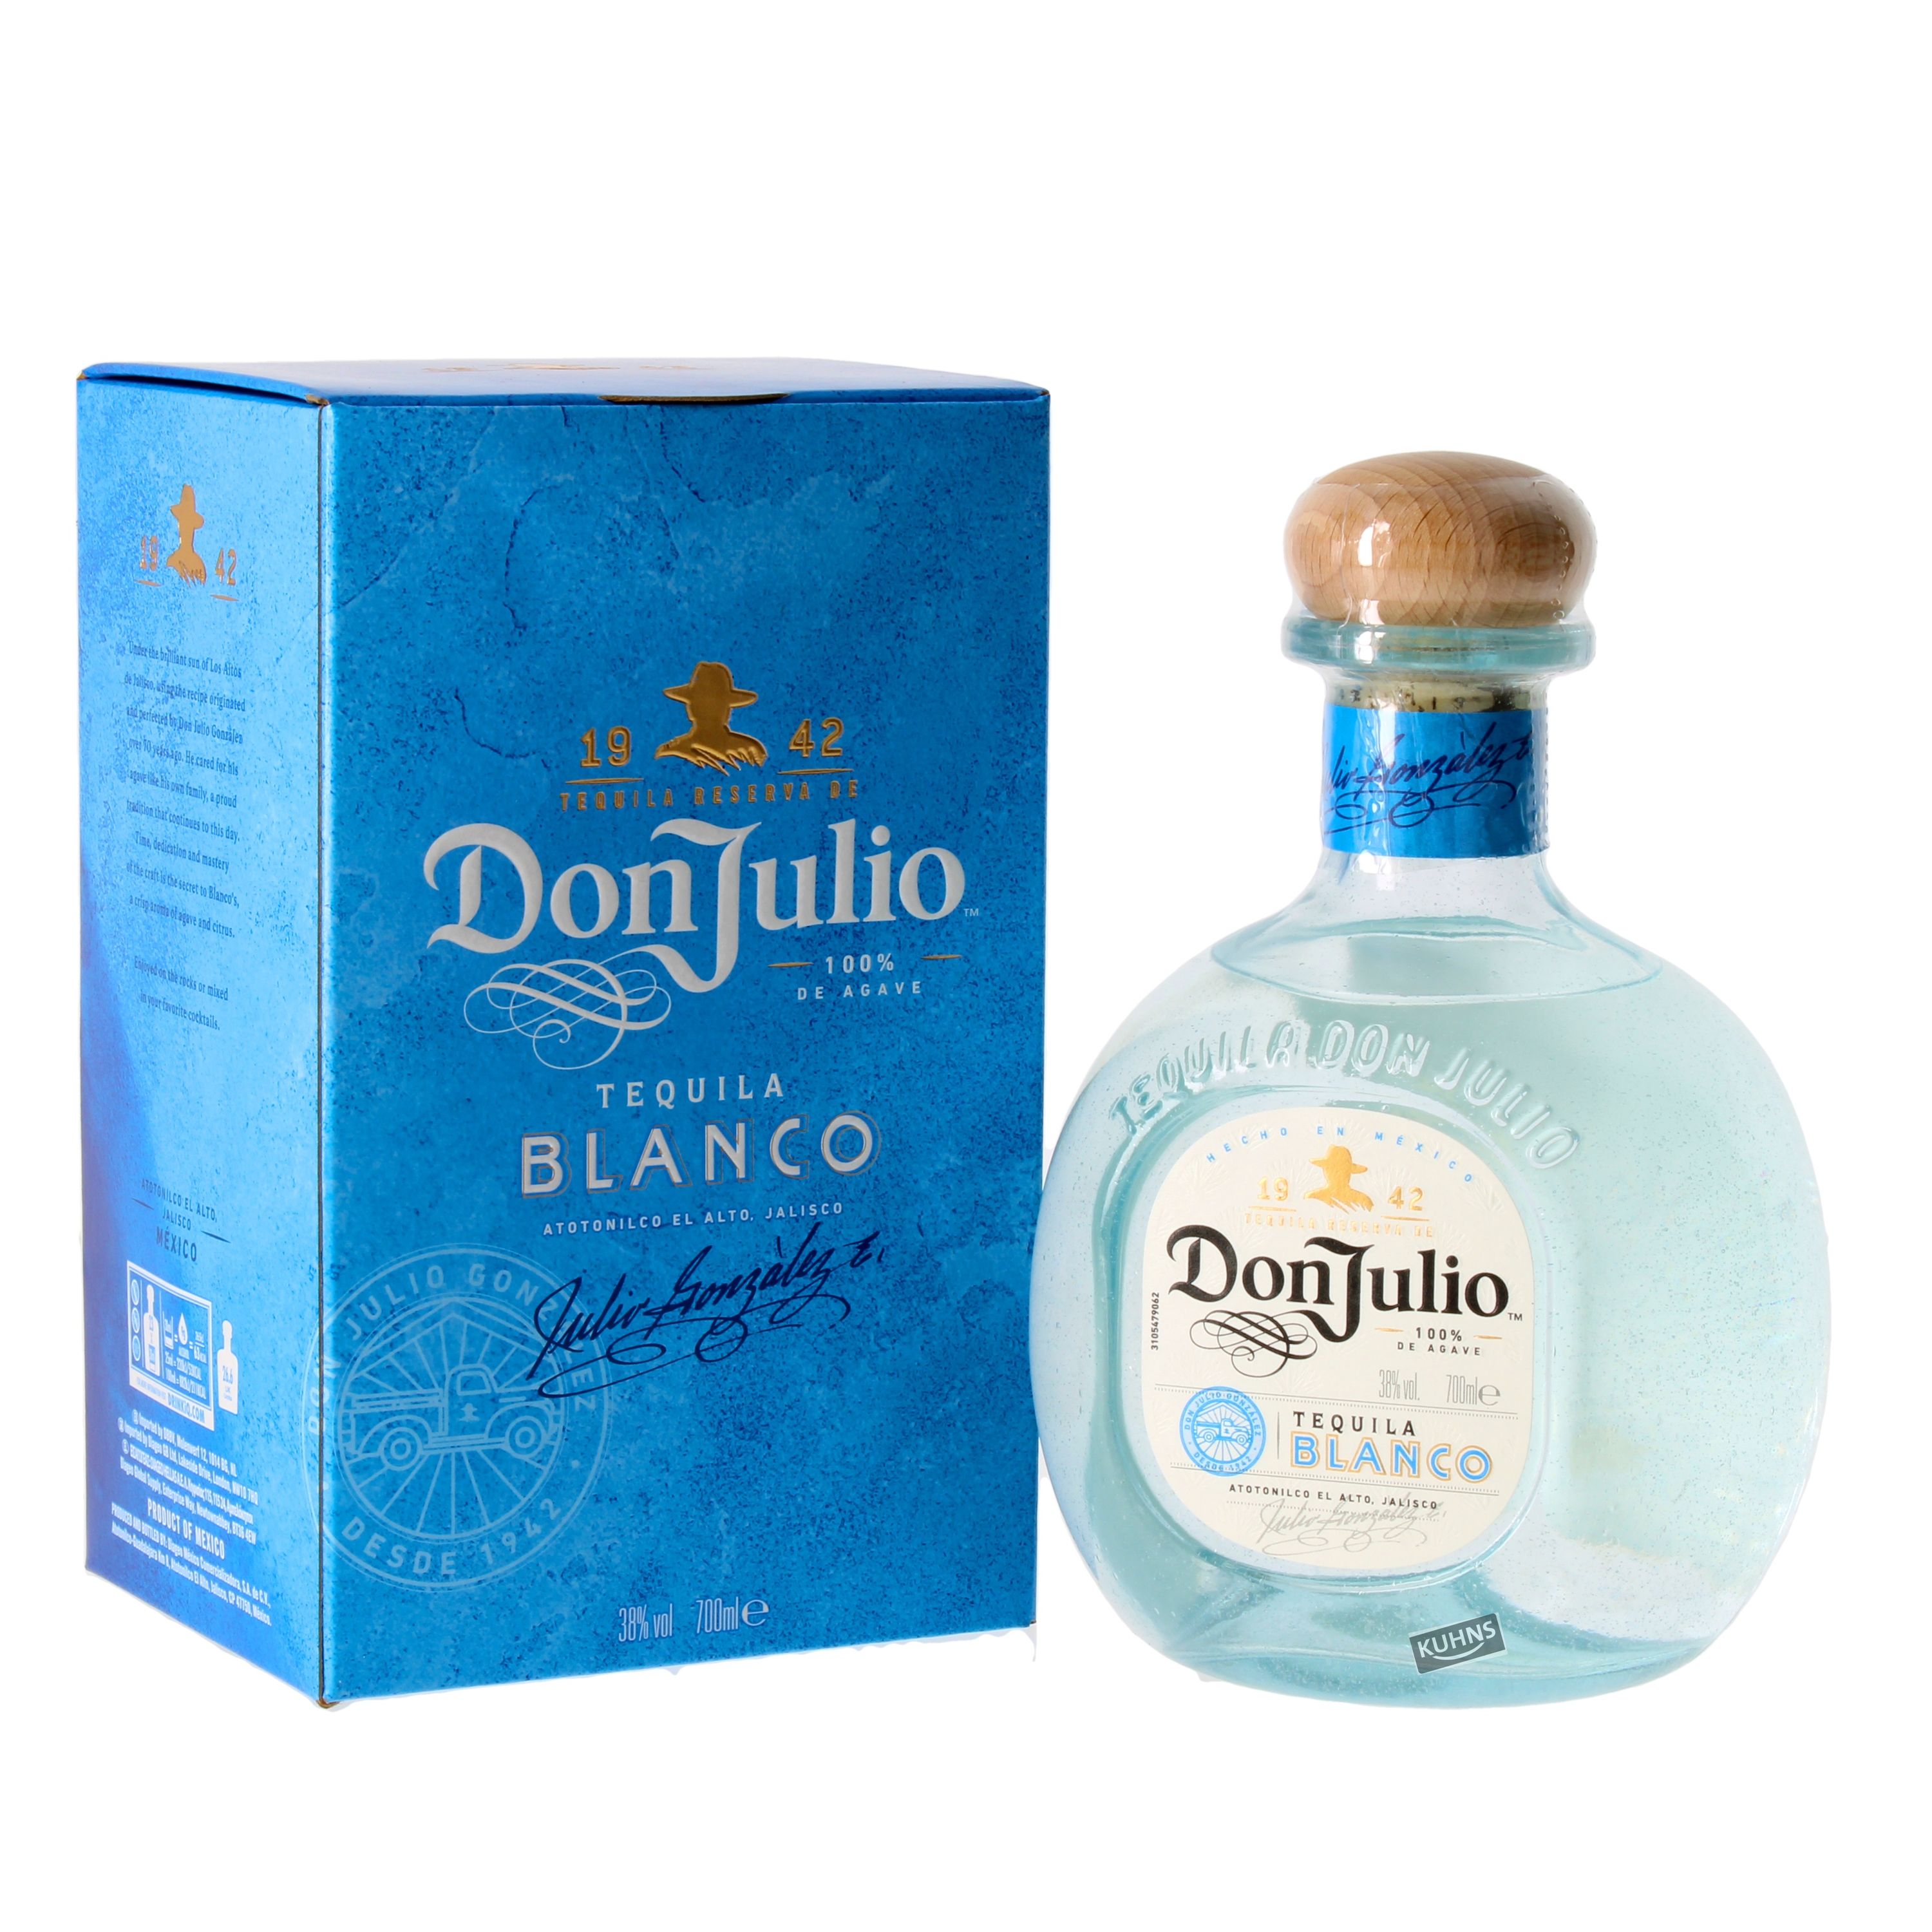 Don Julio Blanco Tequila 0.7l, alc. 38% Vol Tequila Mexico